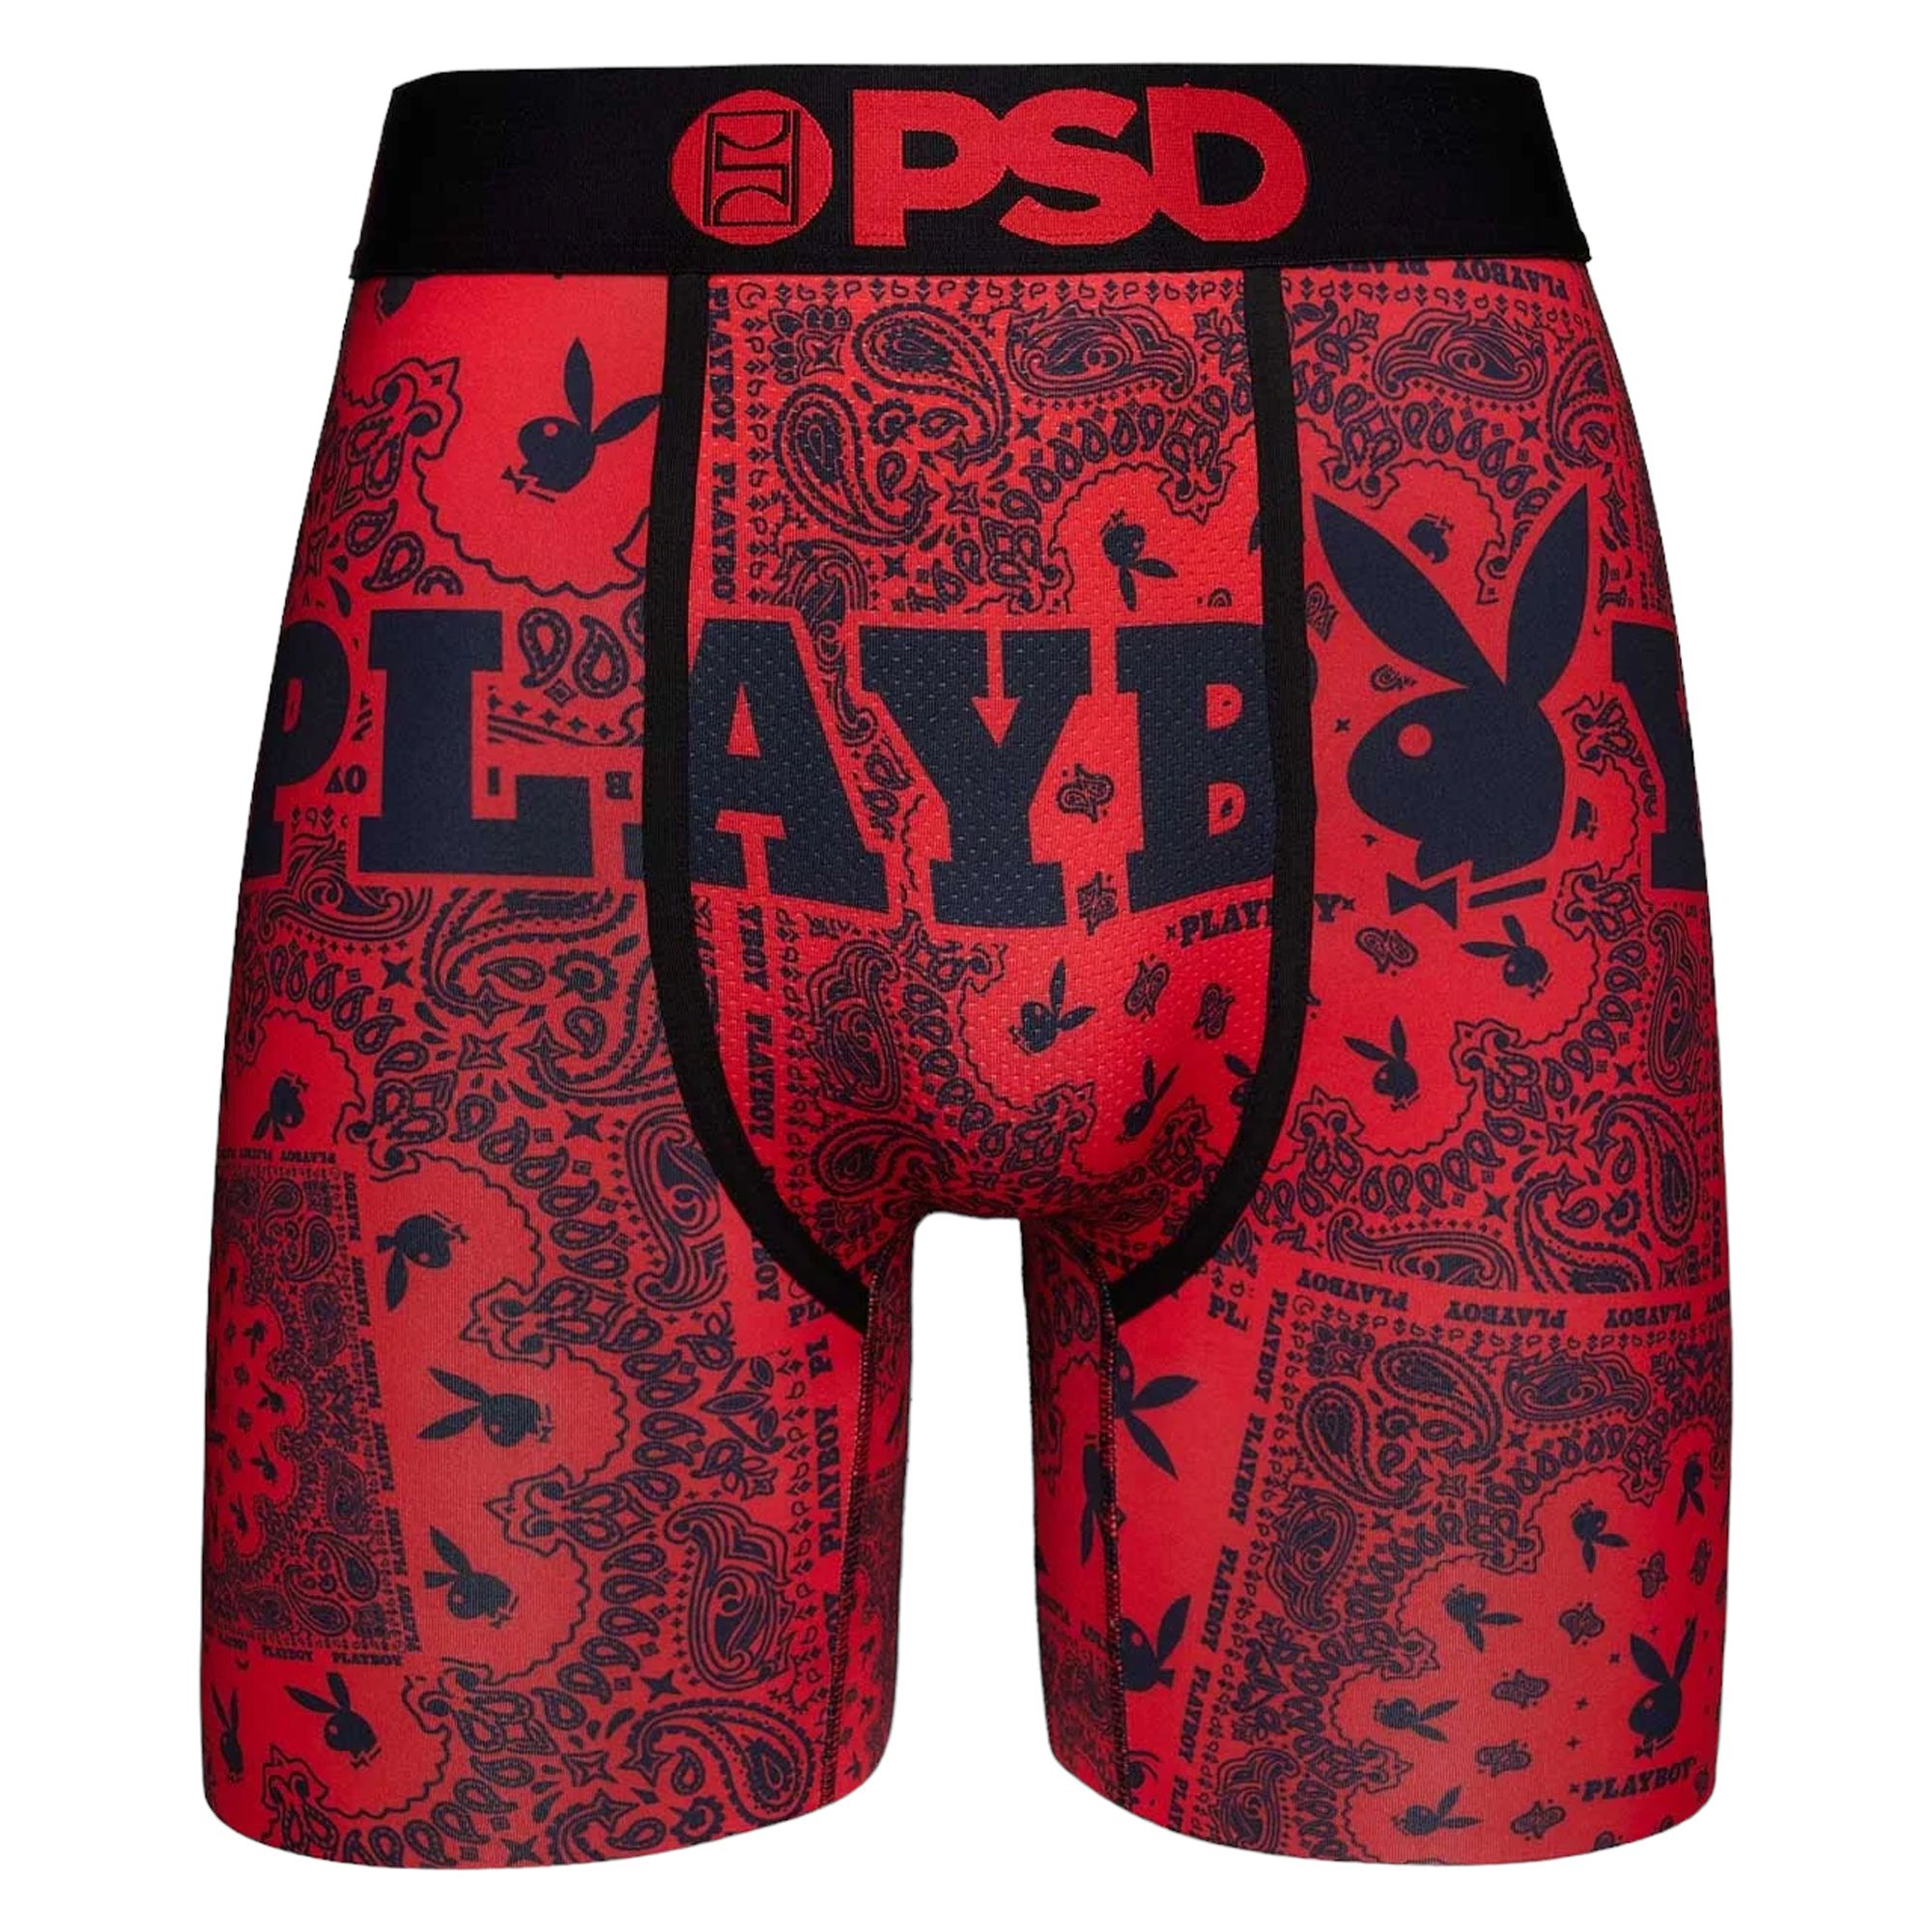 Playboy Underwear Boxermen's Playboy-style Boxer Shorts